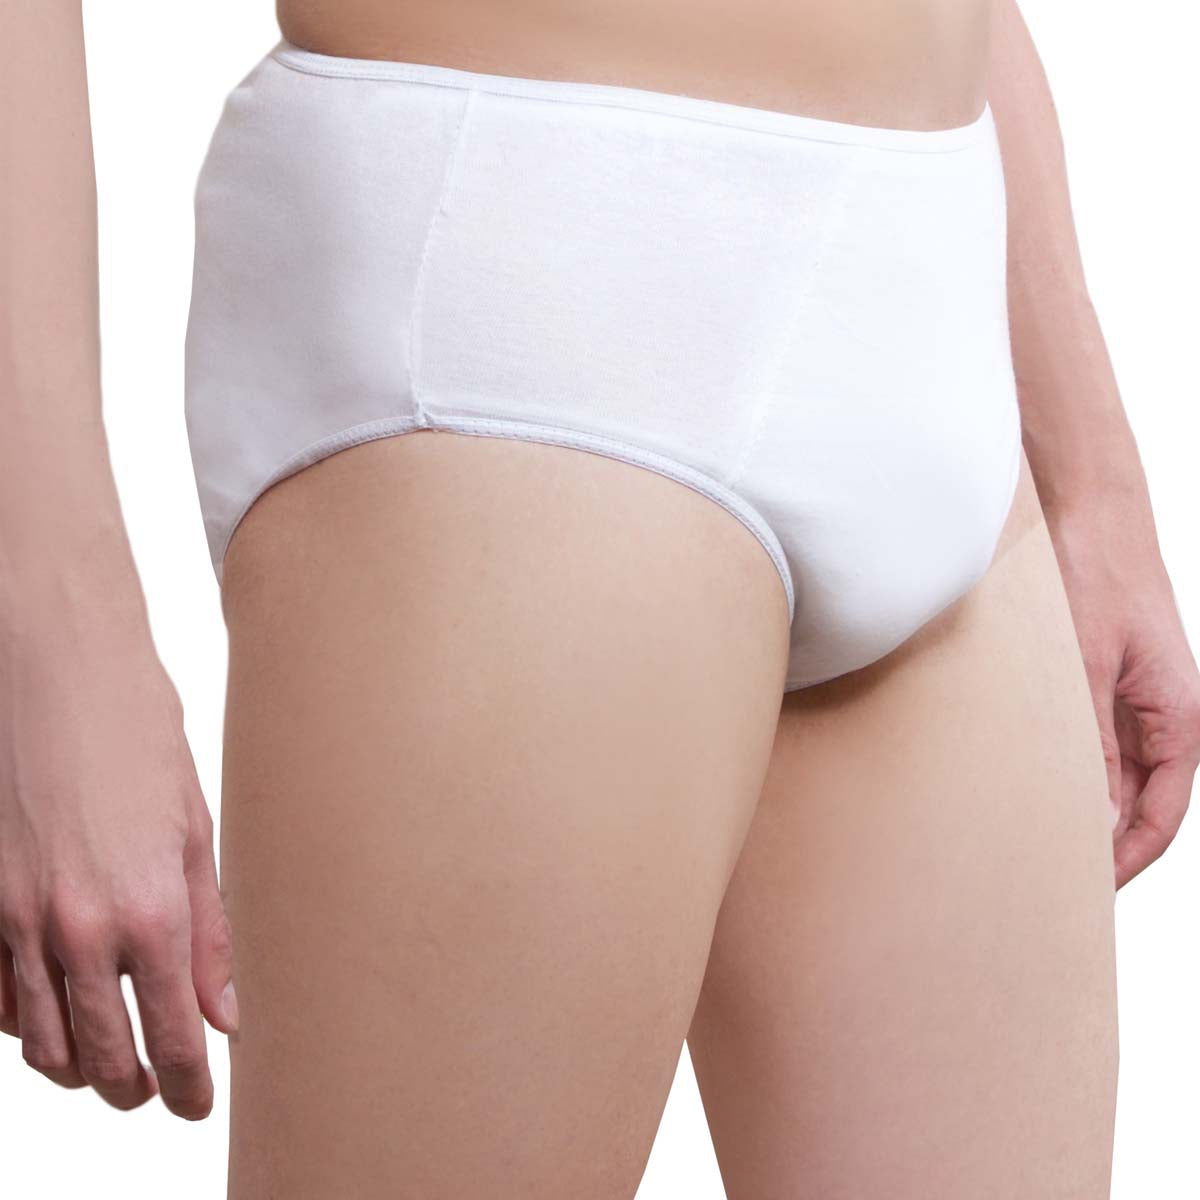 Disposable white travel underwear. Cotton briefs and pants 5pcs